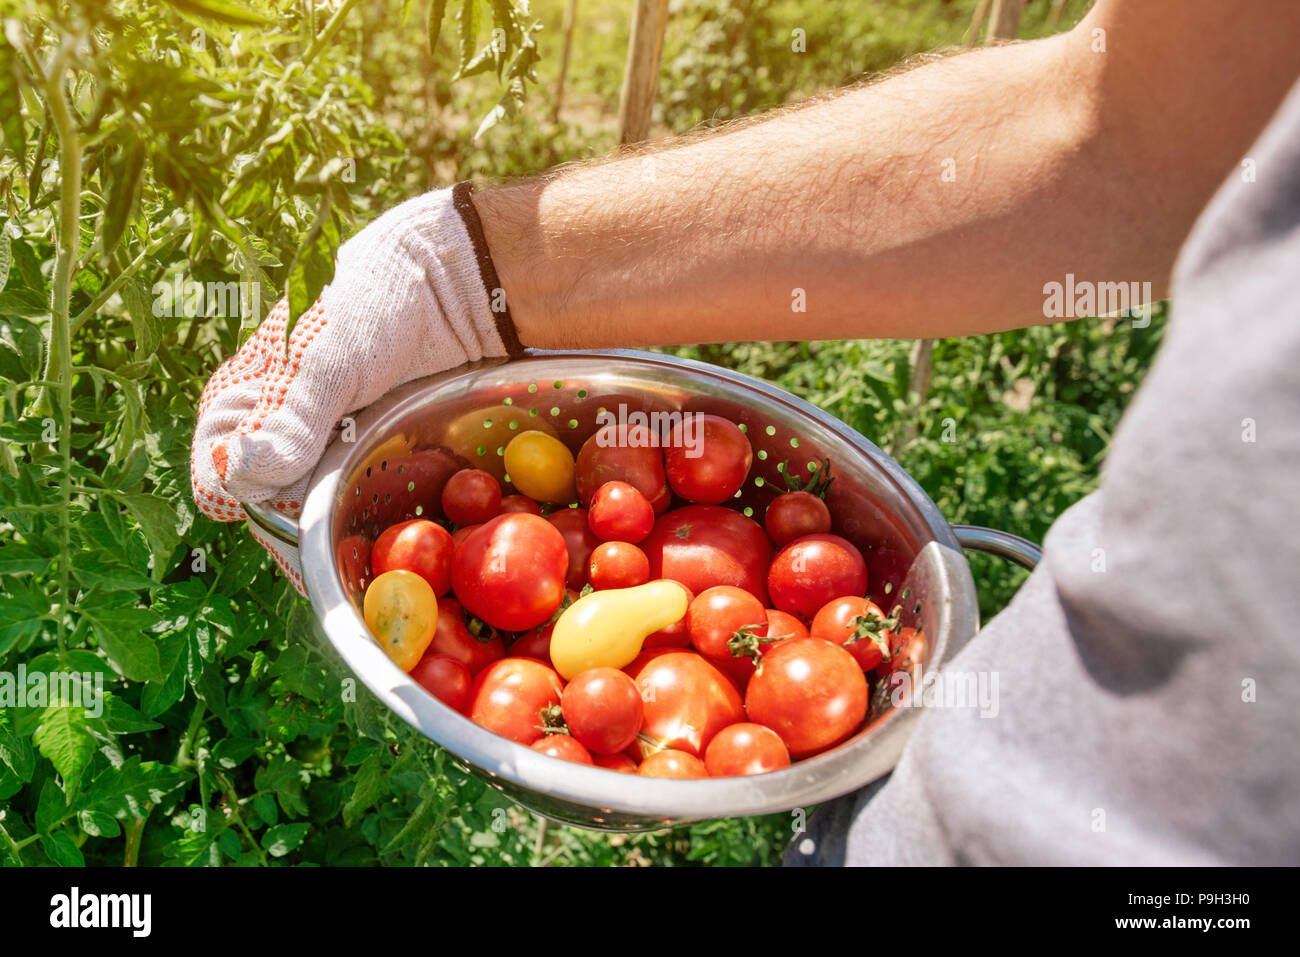 Organico raccolto di pomodoro. L'agricoltore che detiene appena raccolto ortaggio dal giardino. Foto Stock